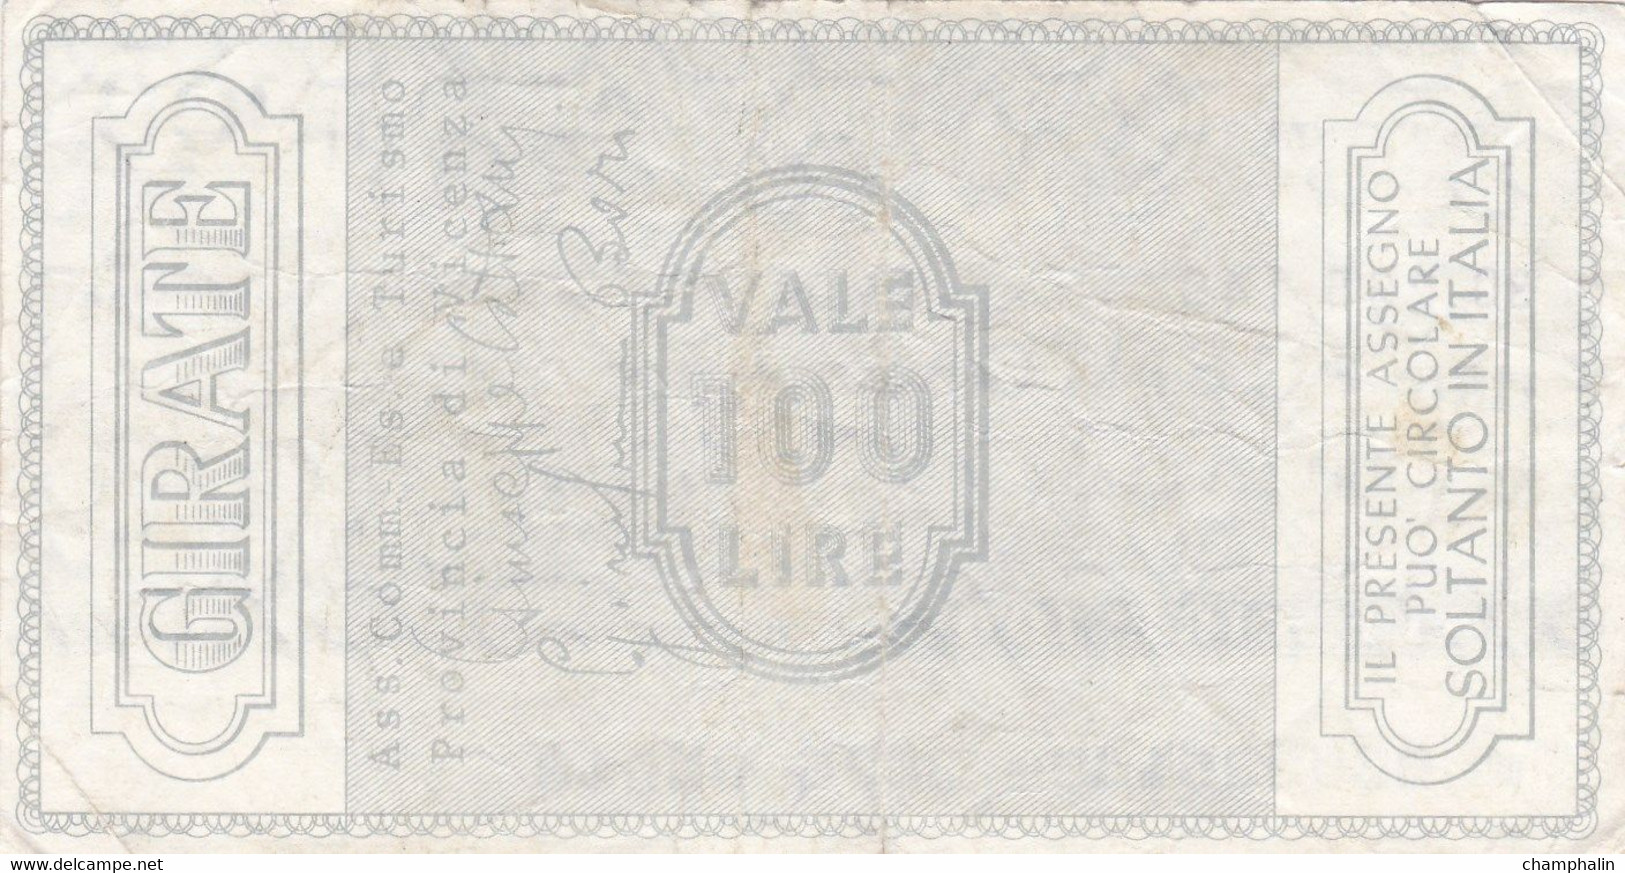 Italie - Billet De 100 Lire - Banco Cattolica Del Veneto - 4 Août 1976 - Emissions Provisionnelles - Chèque - [ 4] Emissions Provisionelles